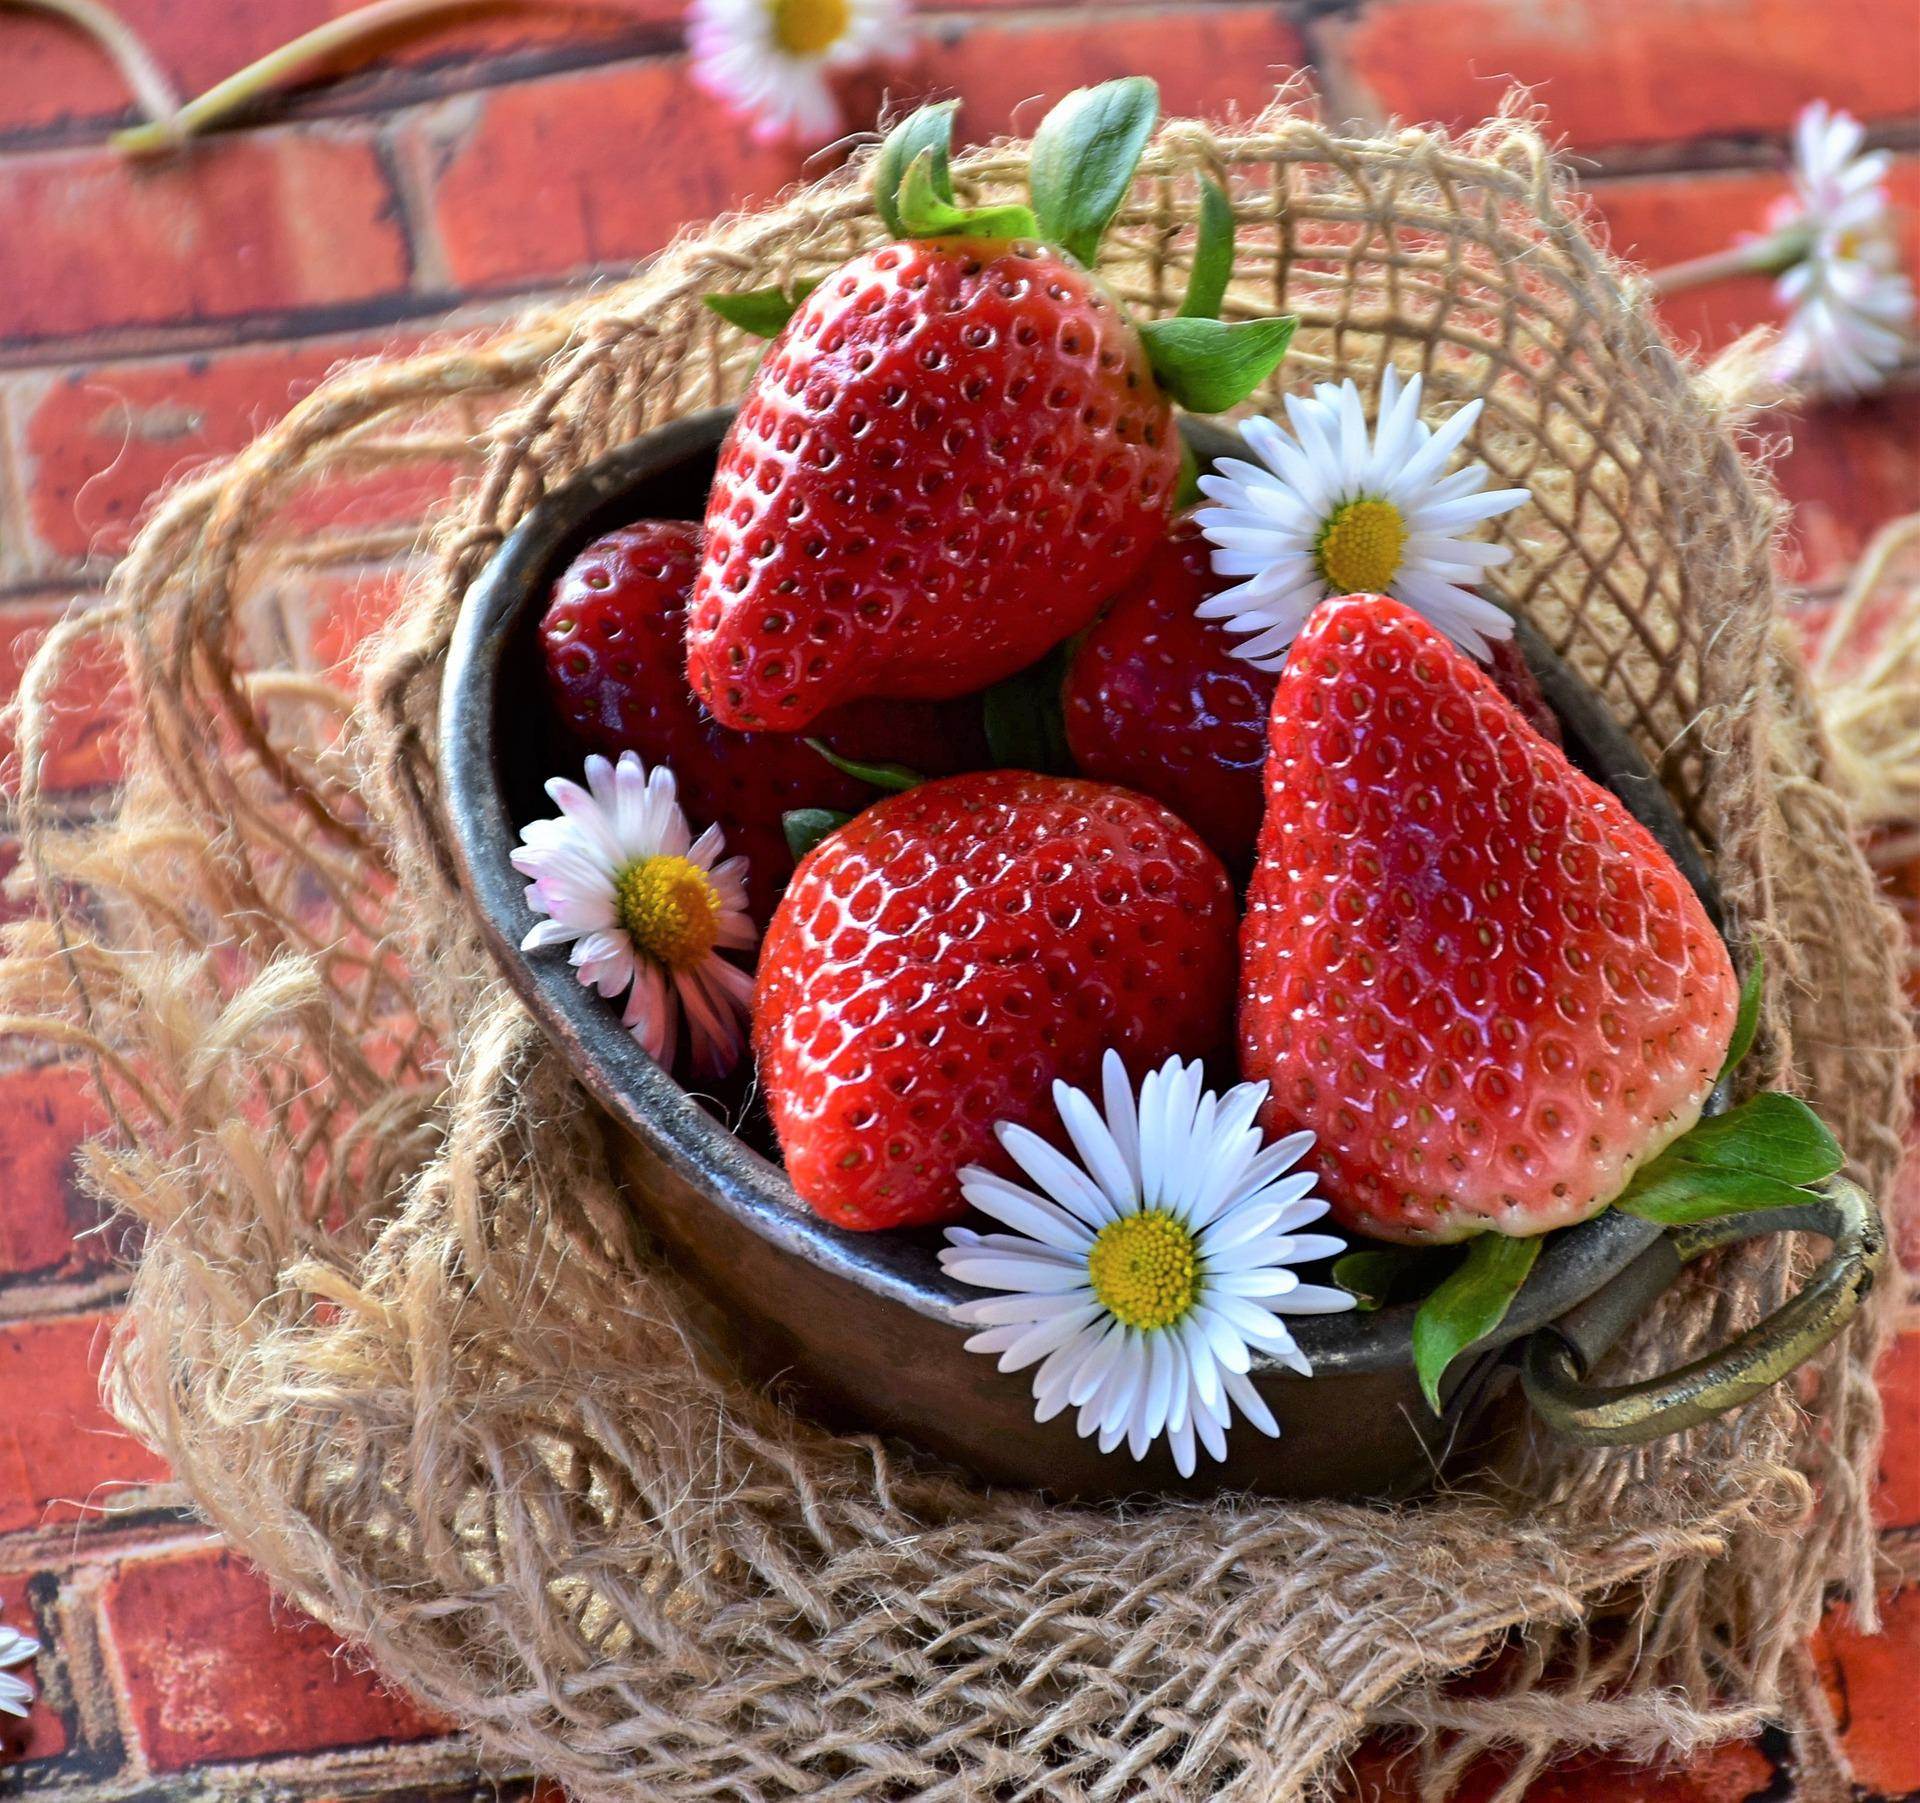 strawberries-g16460578b_1920.jpg